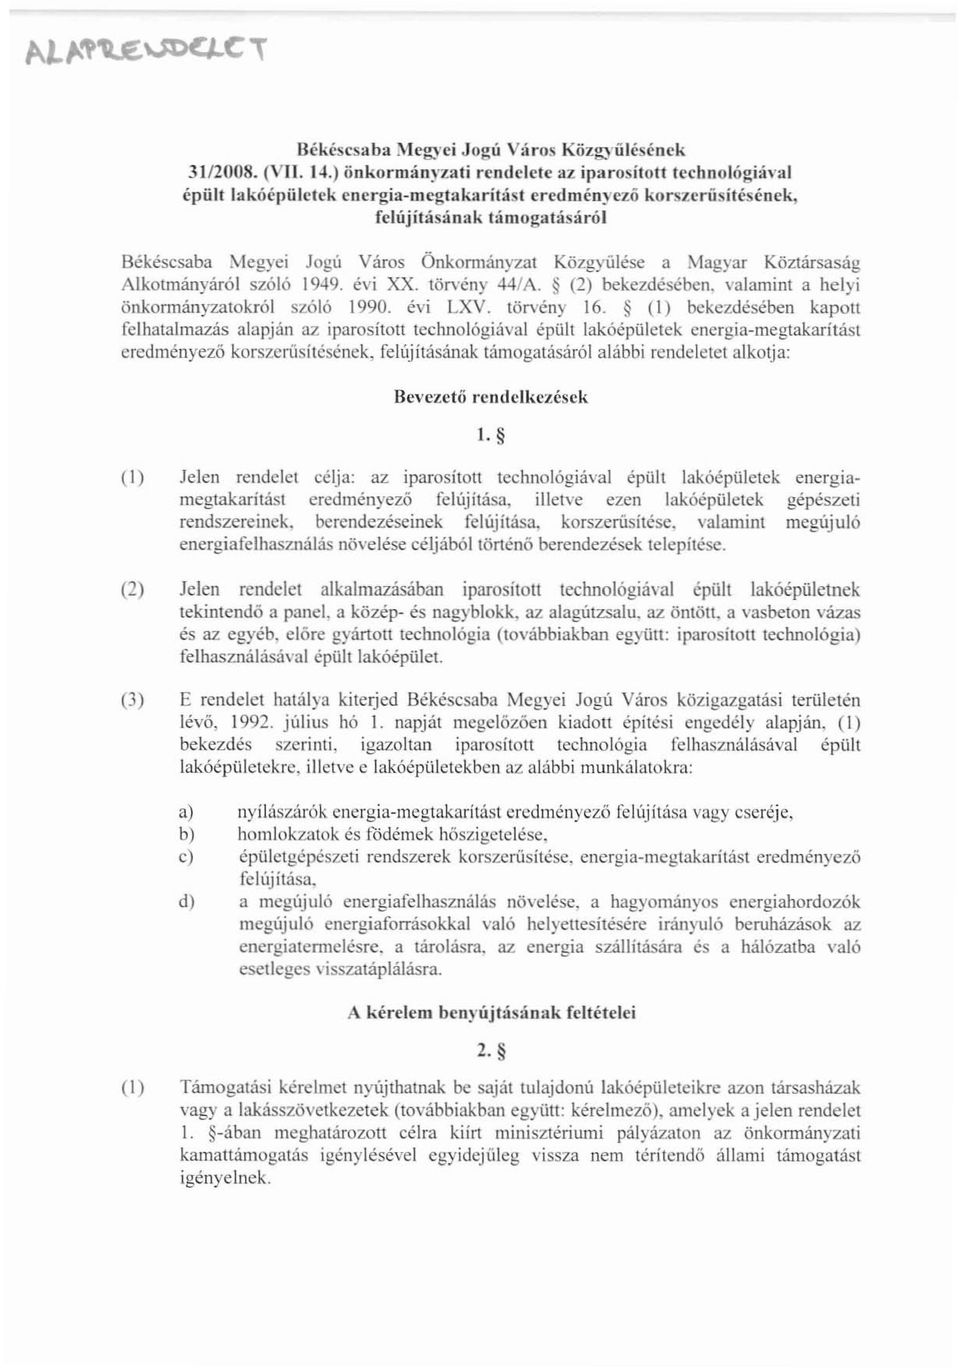 Magyar Köztársaság Alkotmányáról szóló 1949. évi XX. törvény 44/A. (2) bekezdésében. valamint a helyi önkonnányzatokról szóló 1990. évi LXV. törvény 16.